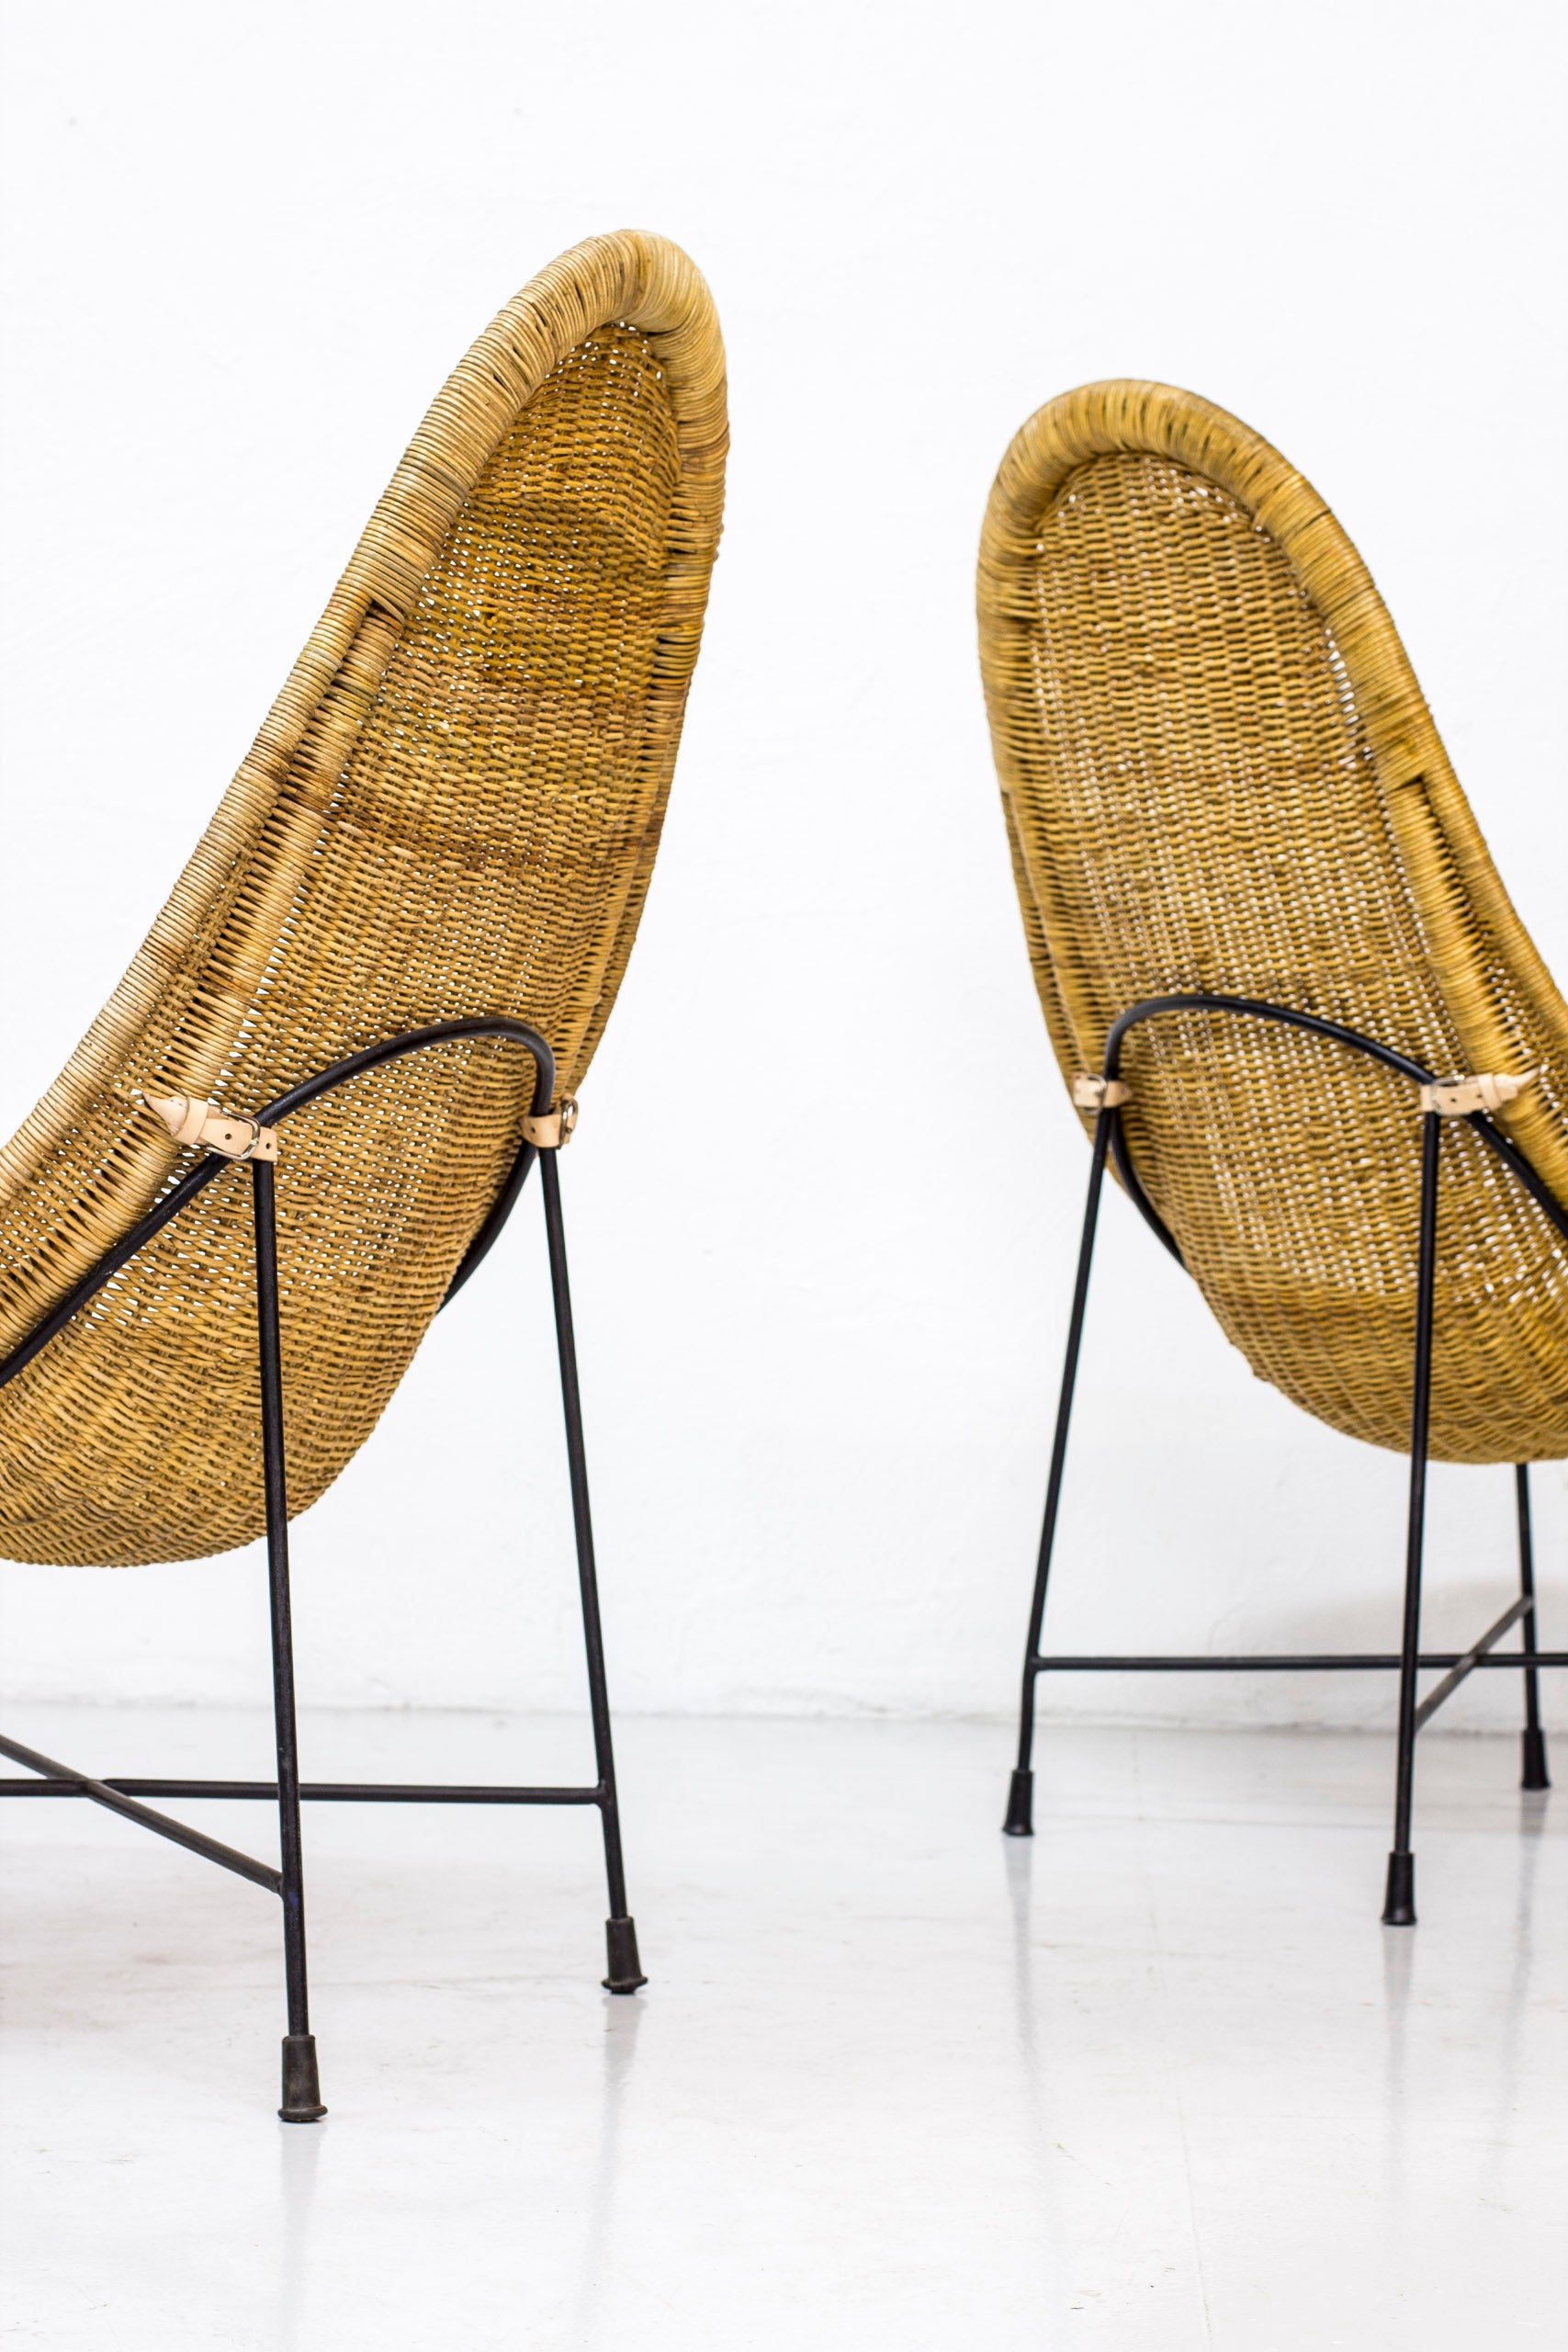 Pair of "Kraal" chairs by Kerstin Hörlin Holmqvist